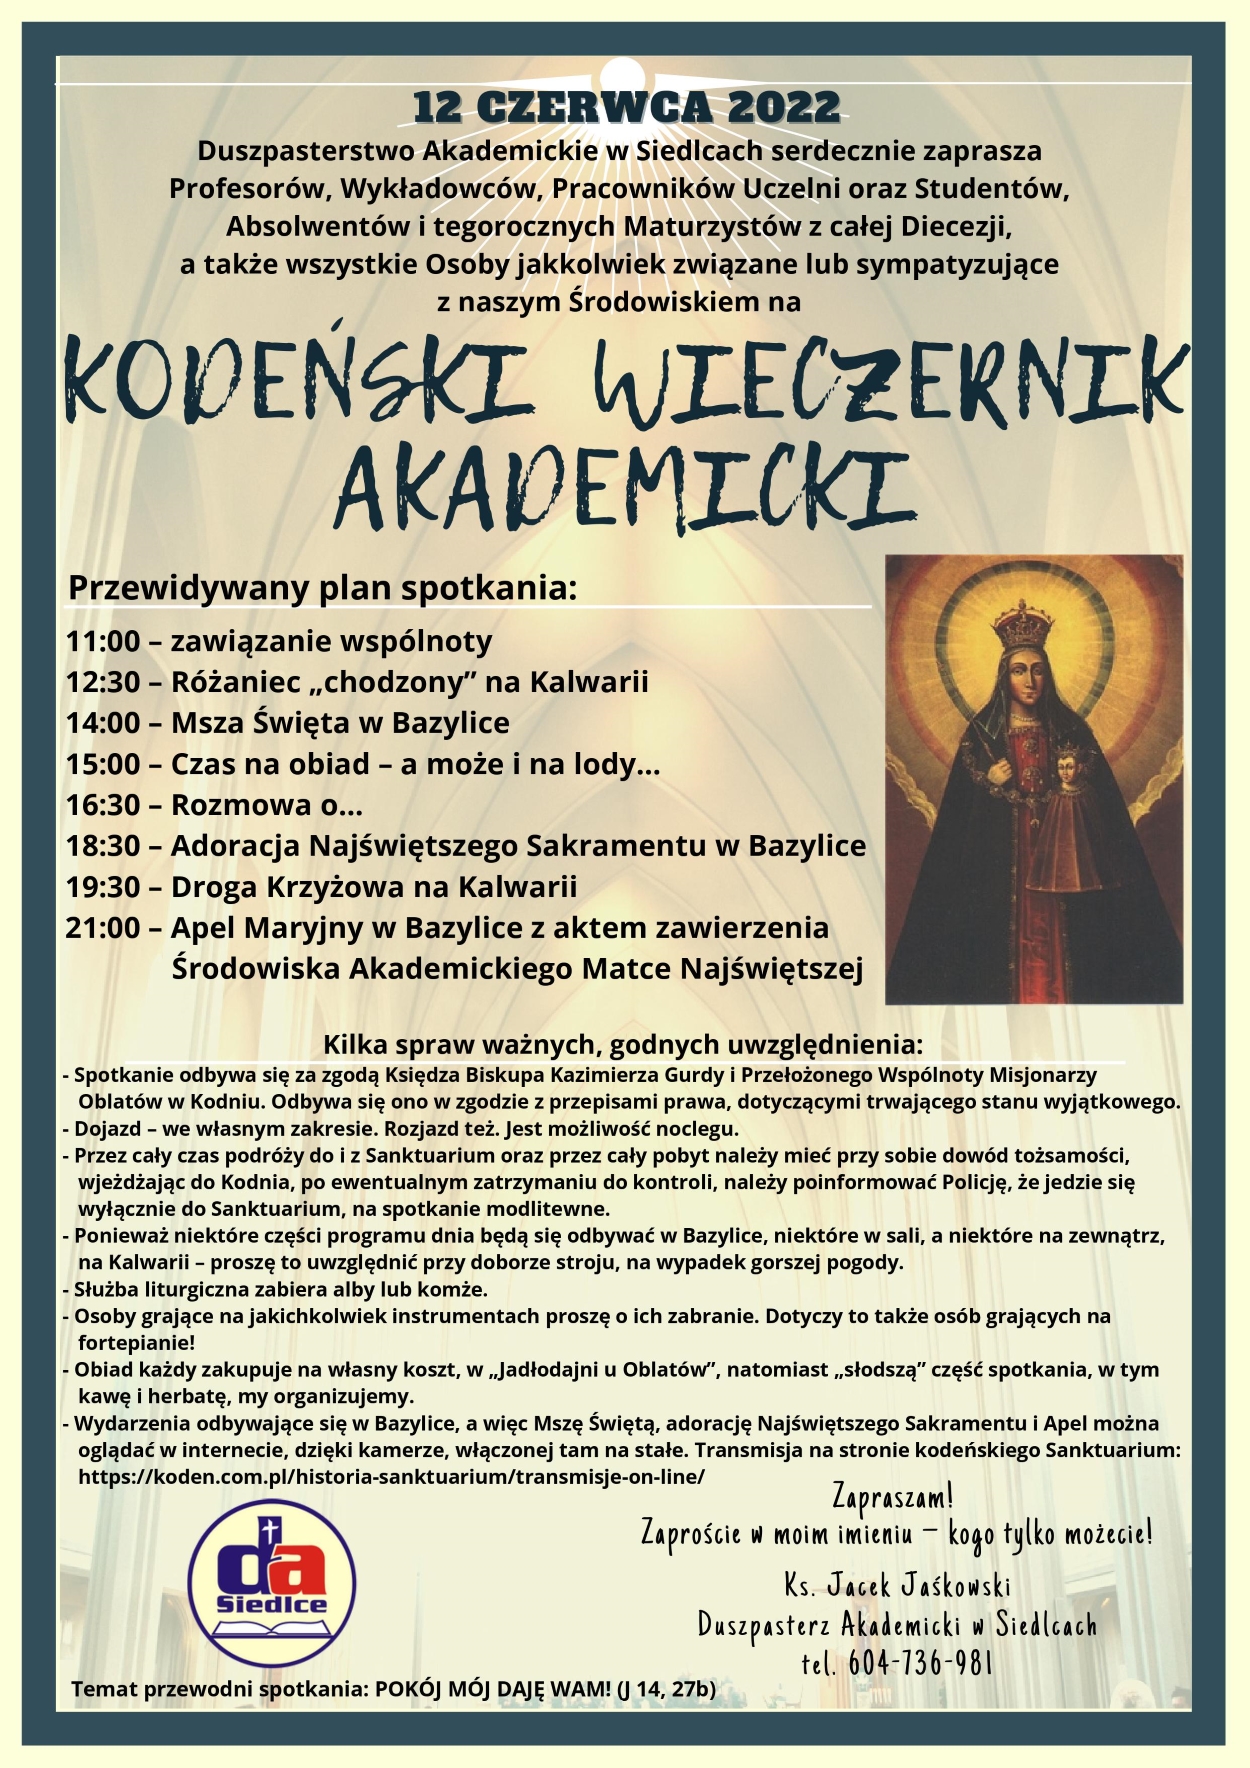 12 czerwca 2022, Pielgrzymka Świata akademickiego do Sanktuarium Matki Bożej w Kodniu, pod nazwą: KODEŃSKI WIECZERNIK AKADEMICKI.